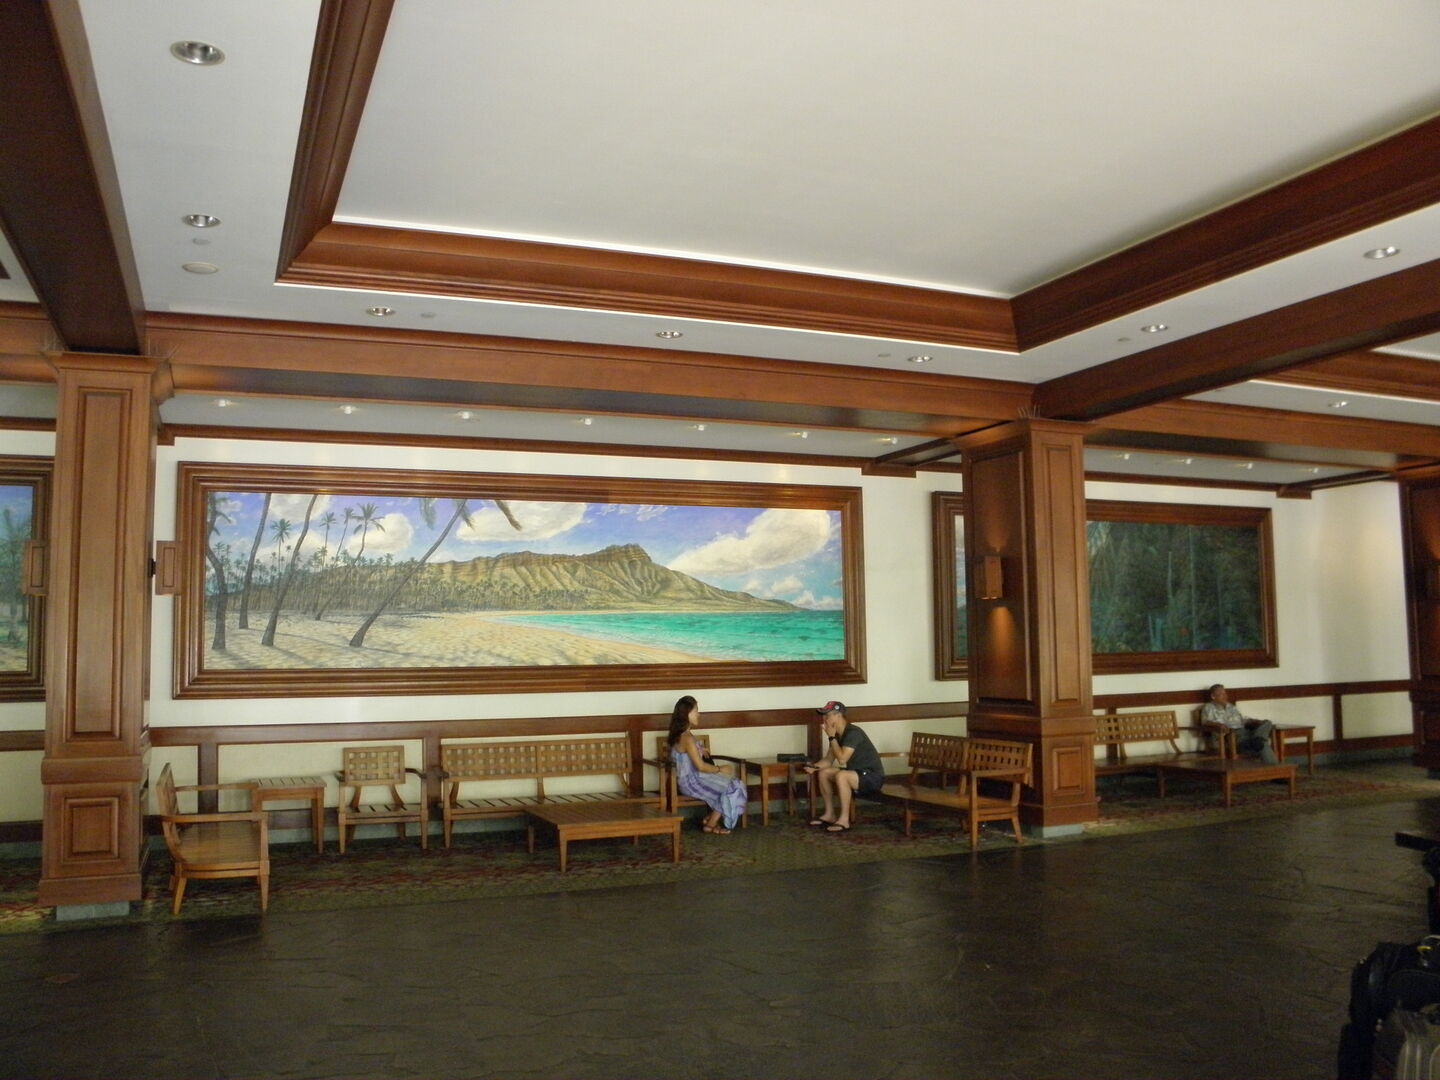 Lobby on the ground floor